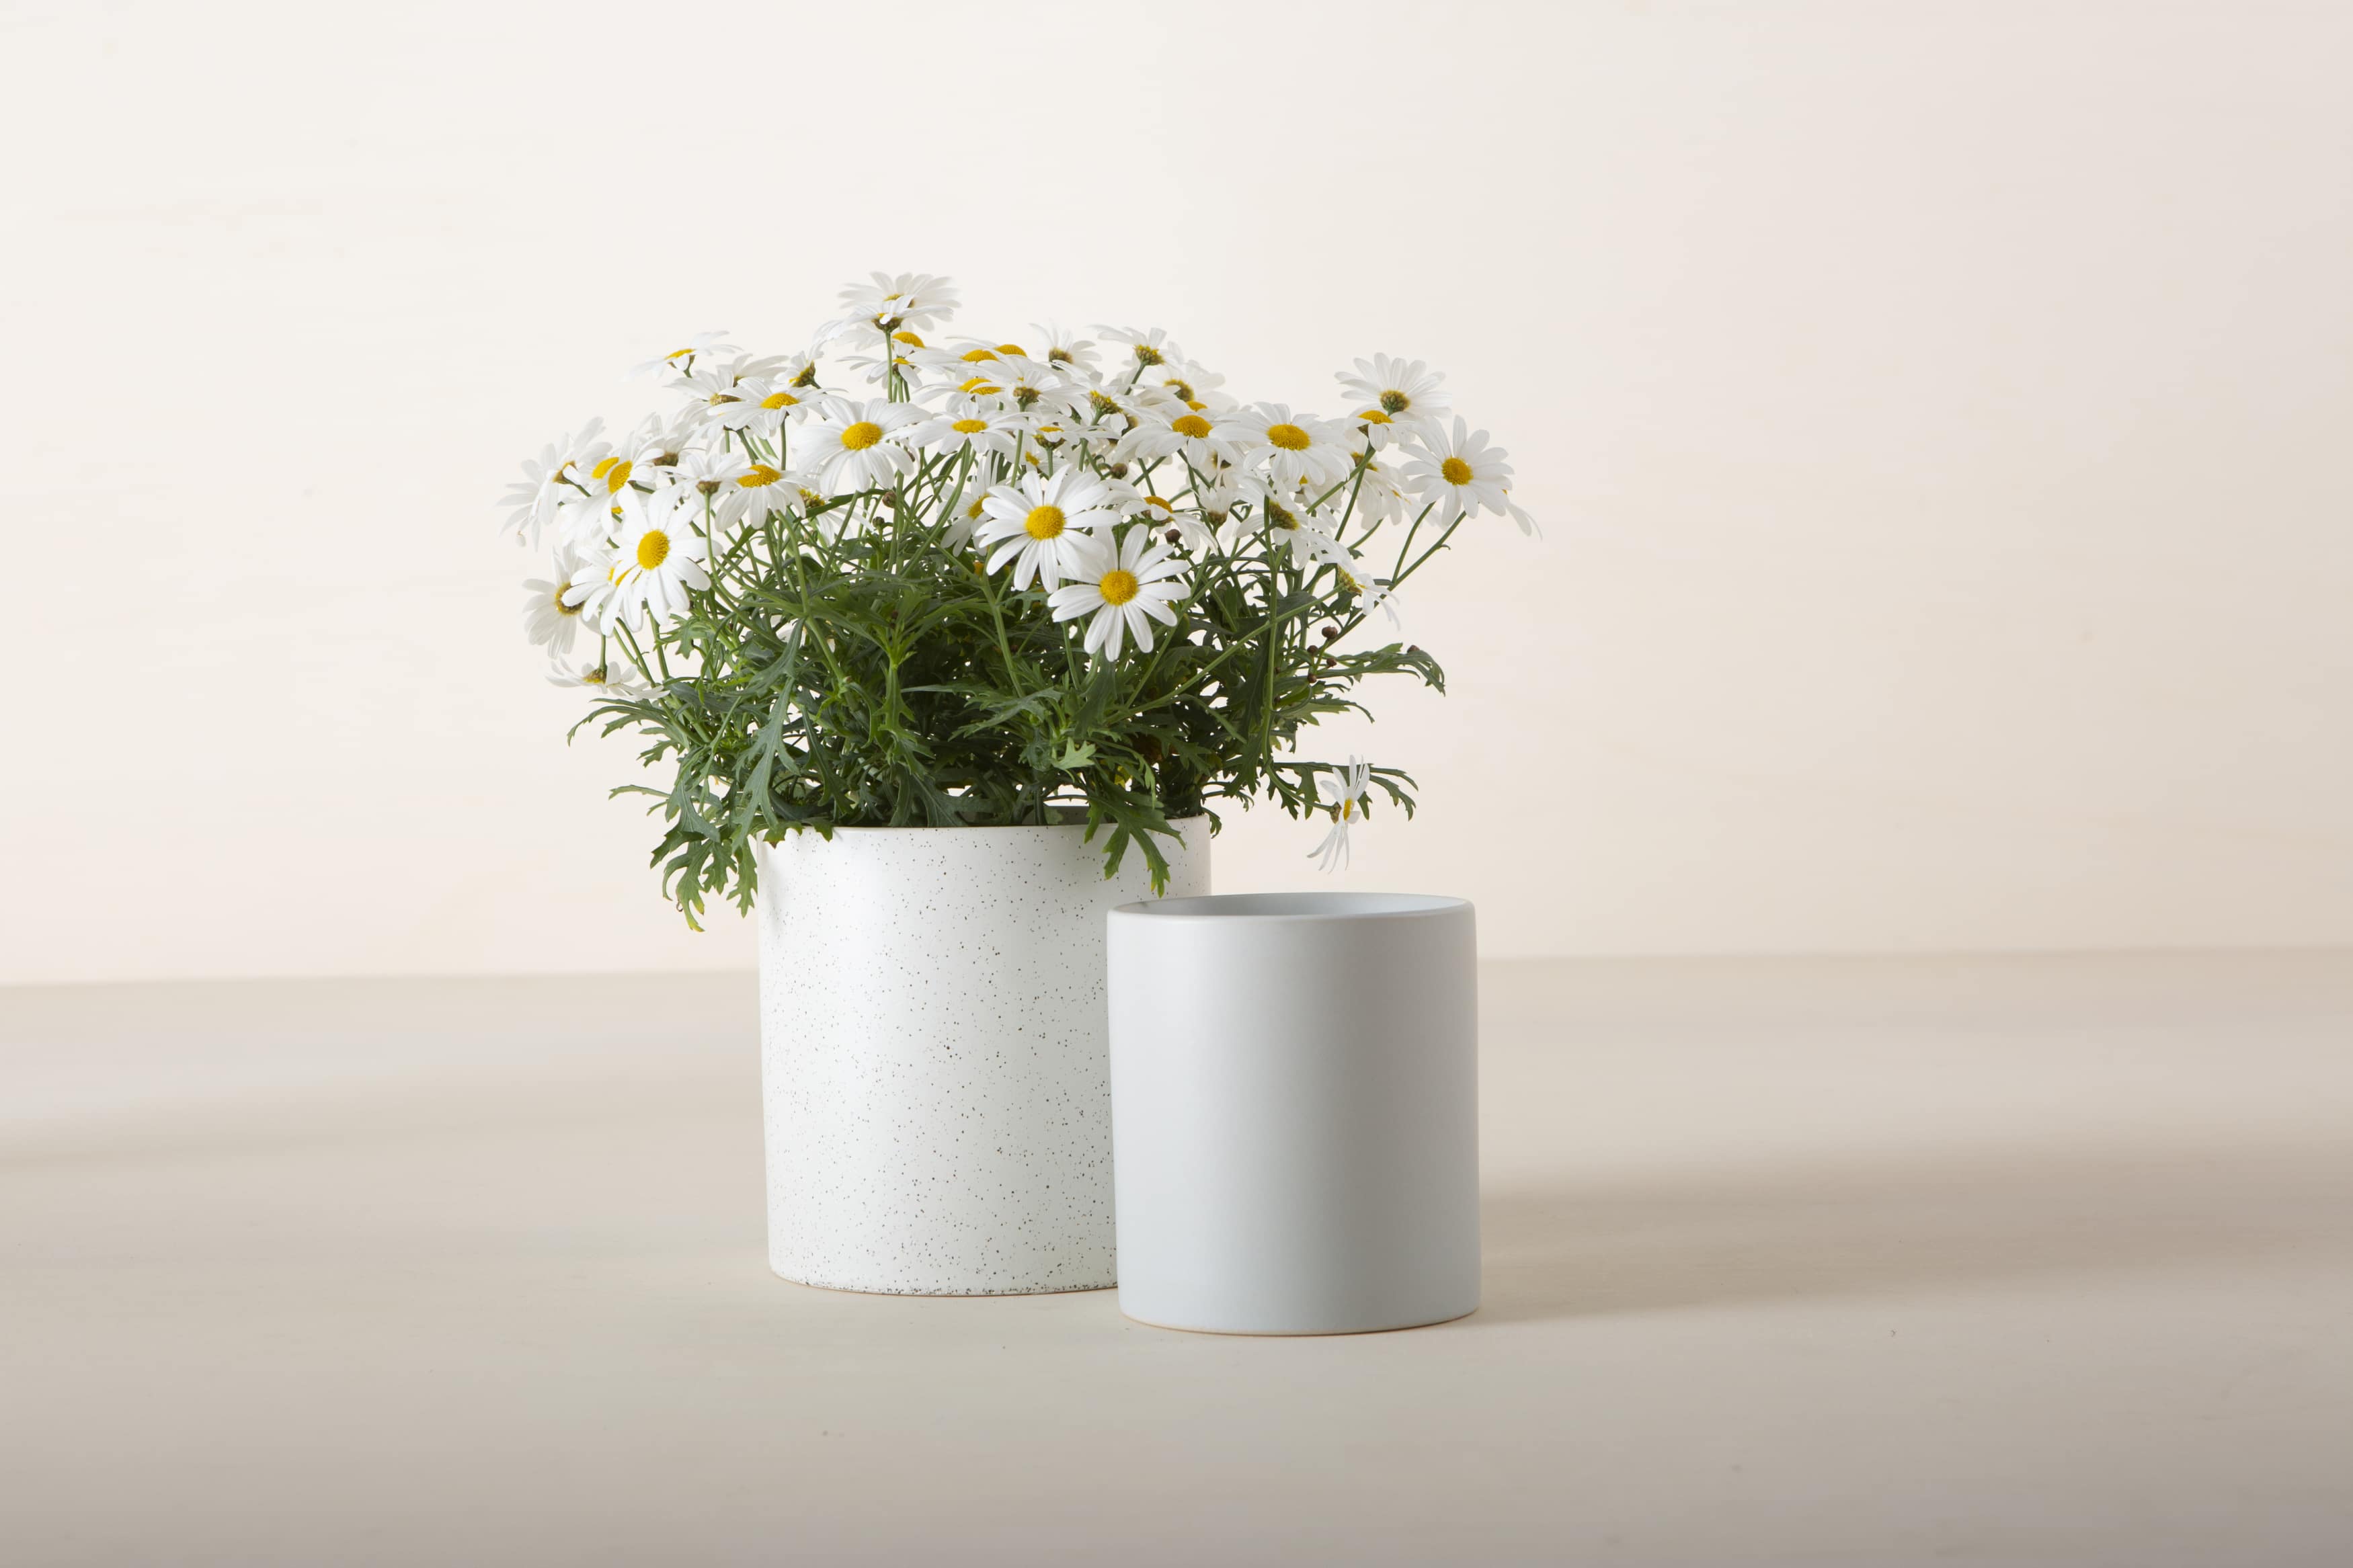 Dieser minimalistische Blumentopf oder -vase zeichnet sich durch klare Linien und ein niedliches Pünktchen-Muster aus.